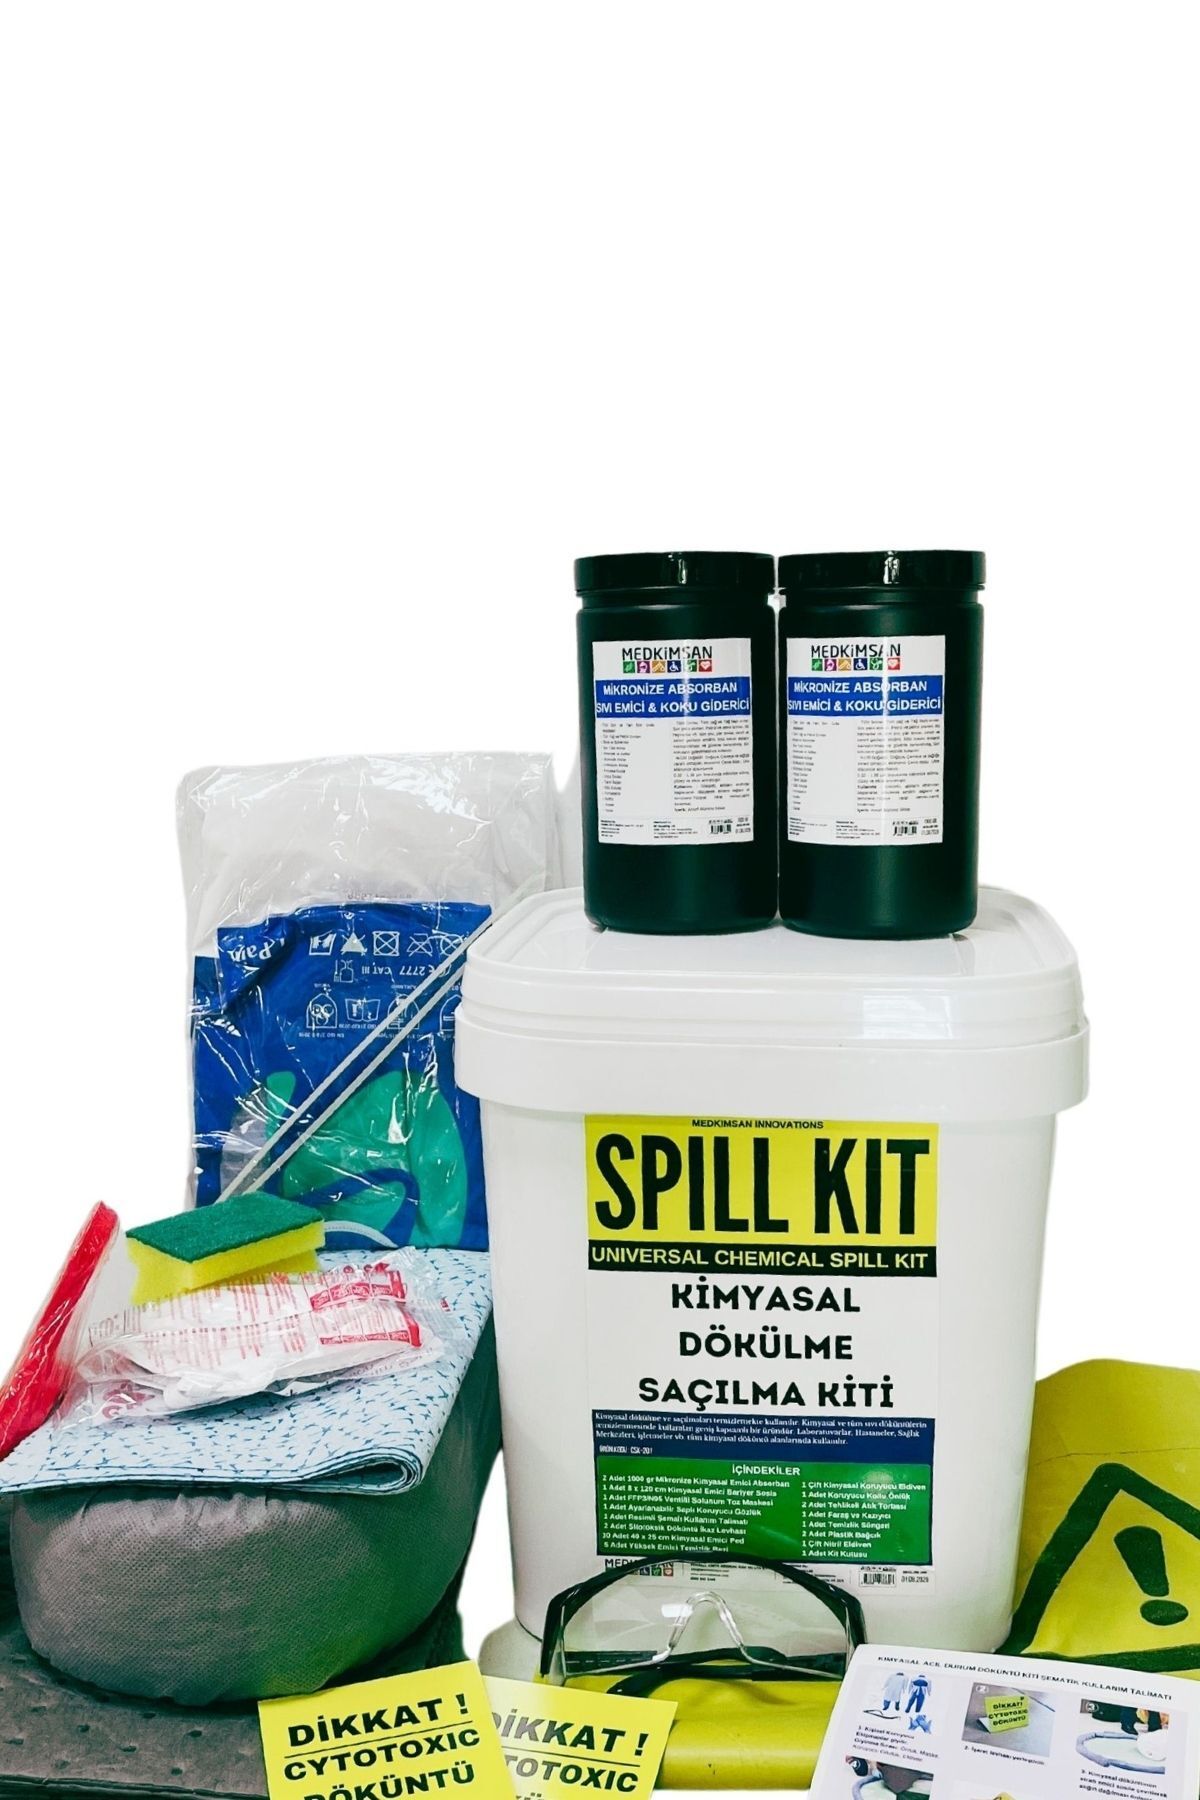 Medkimsan Kimyasal Acil Durum Kiti | Nötralizasyon Kiti | Dökülme / Saçılma Kiti | Chemical Spill Kit